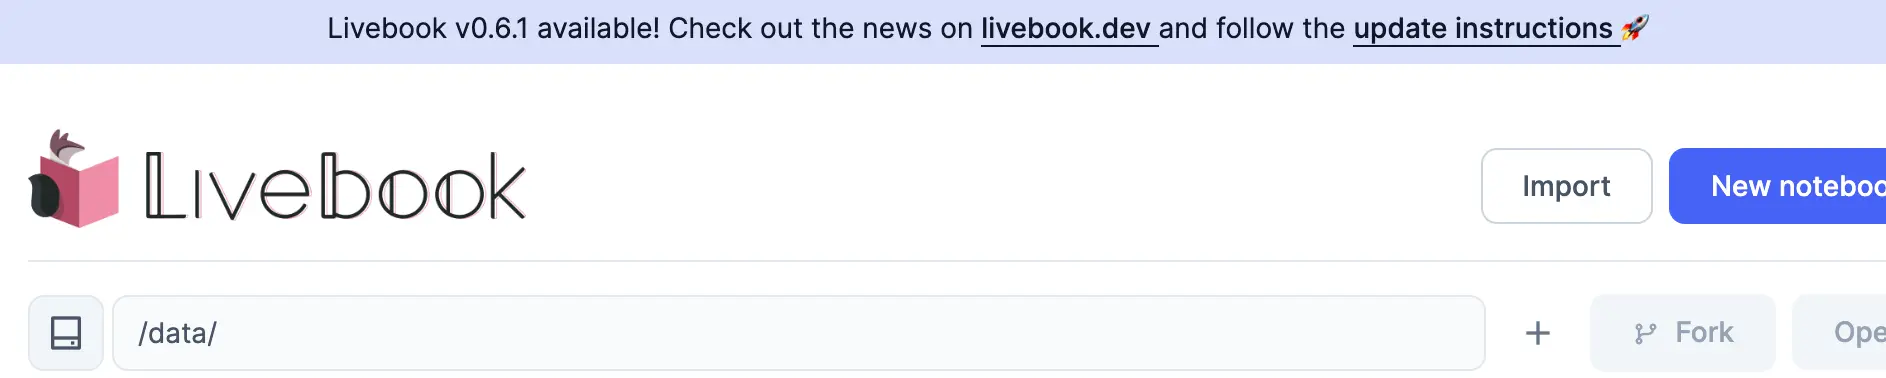 Screenshot of an update prompt on a running Livebook